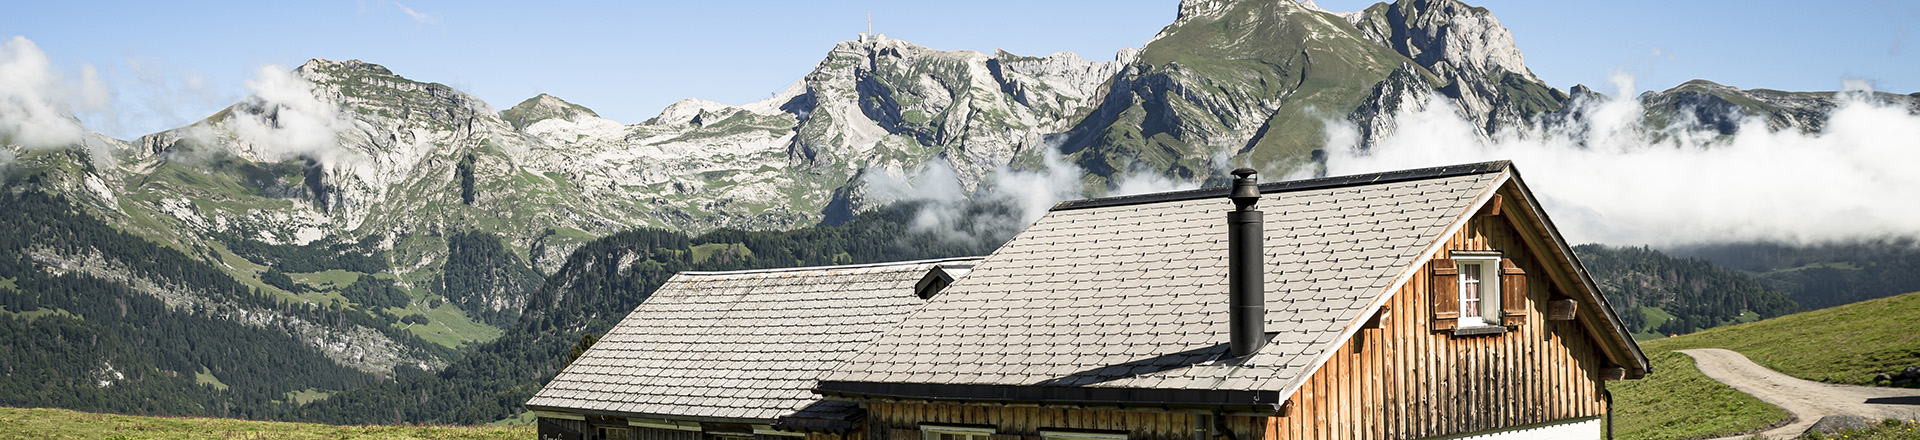 Swiss alpine huts